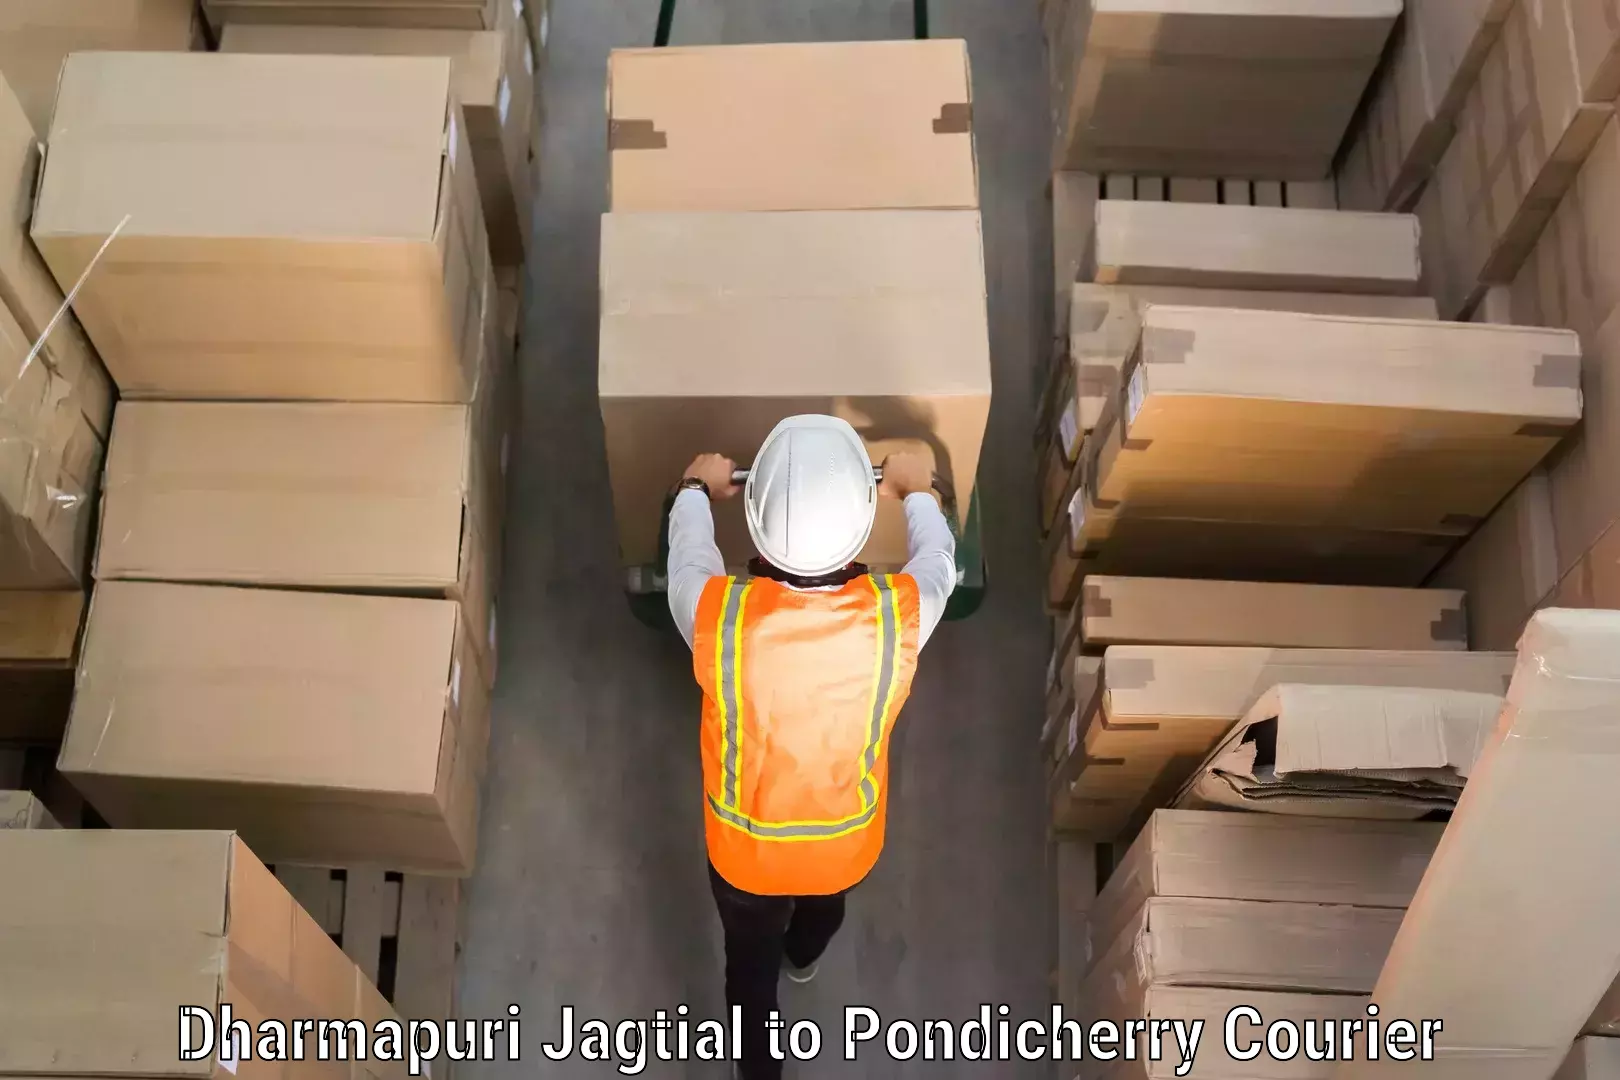 Door-to-door baggage service Dharmapuri Jagtial to Pondicherry